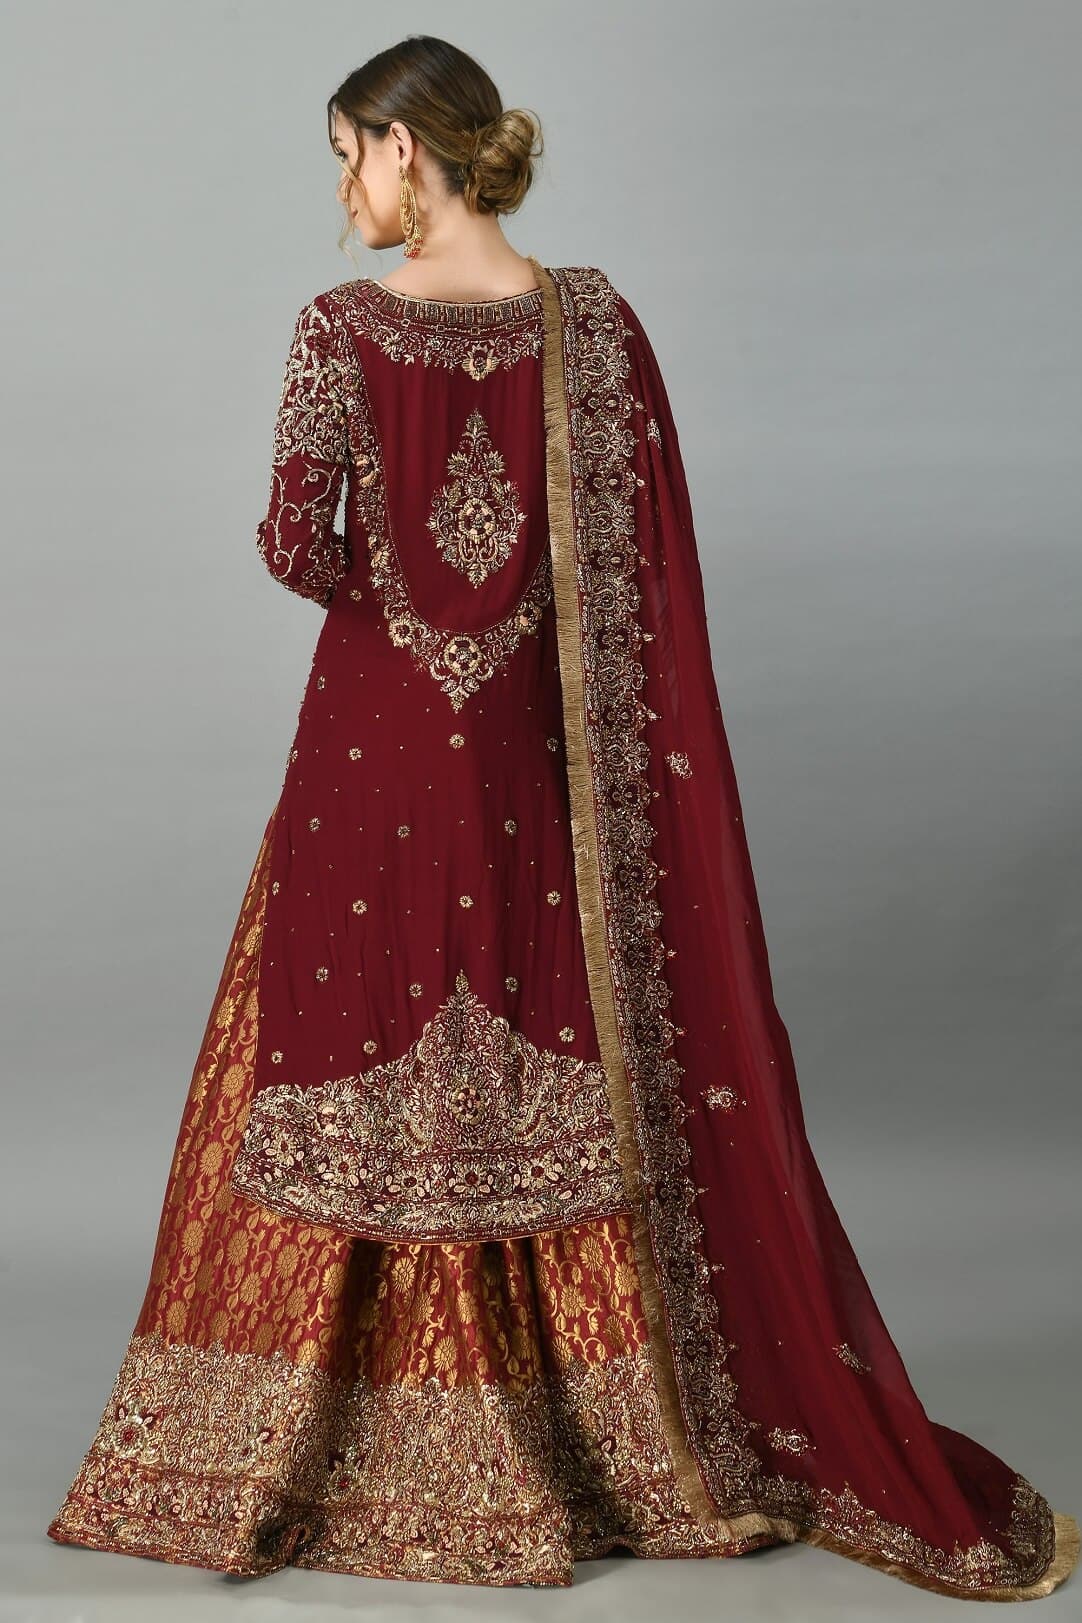 Latest Designs In Saree, Salwar Kameez, Indian Saree, Tunic, Kurti,  Designer Saris, Bollywood Outf… | Bridal dress design, Long choli lehenga,  Indian bridal couture